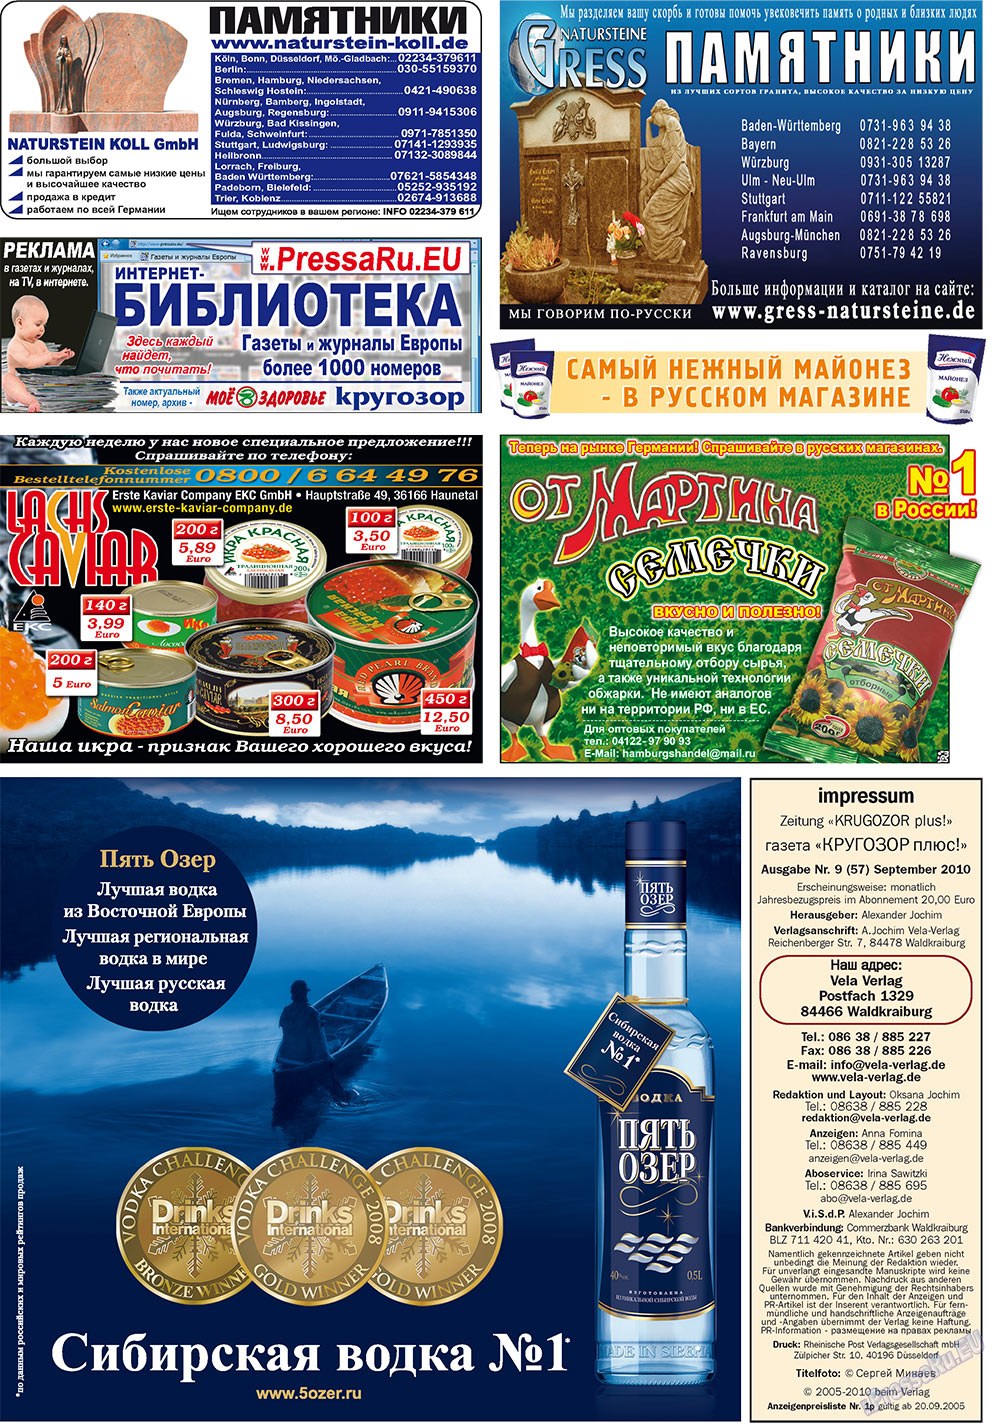 Кругозор плюс!, газета. 2010 №9 стр.40